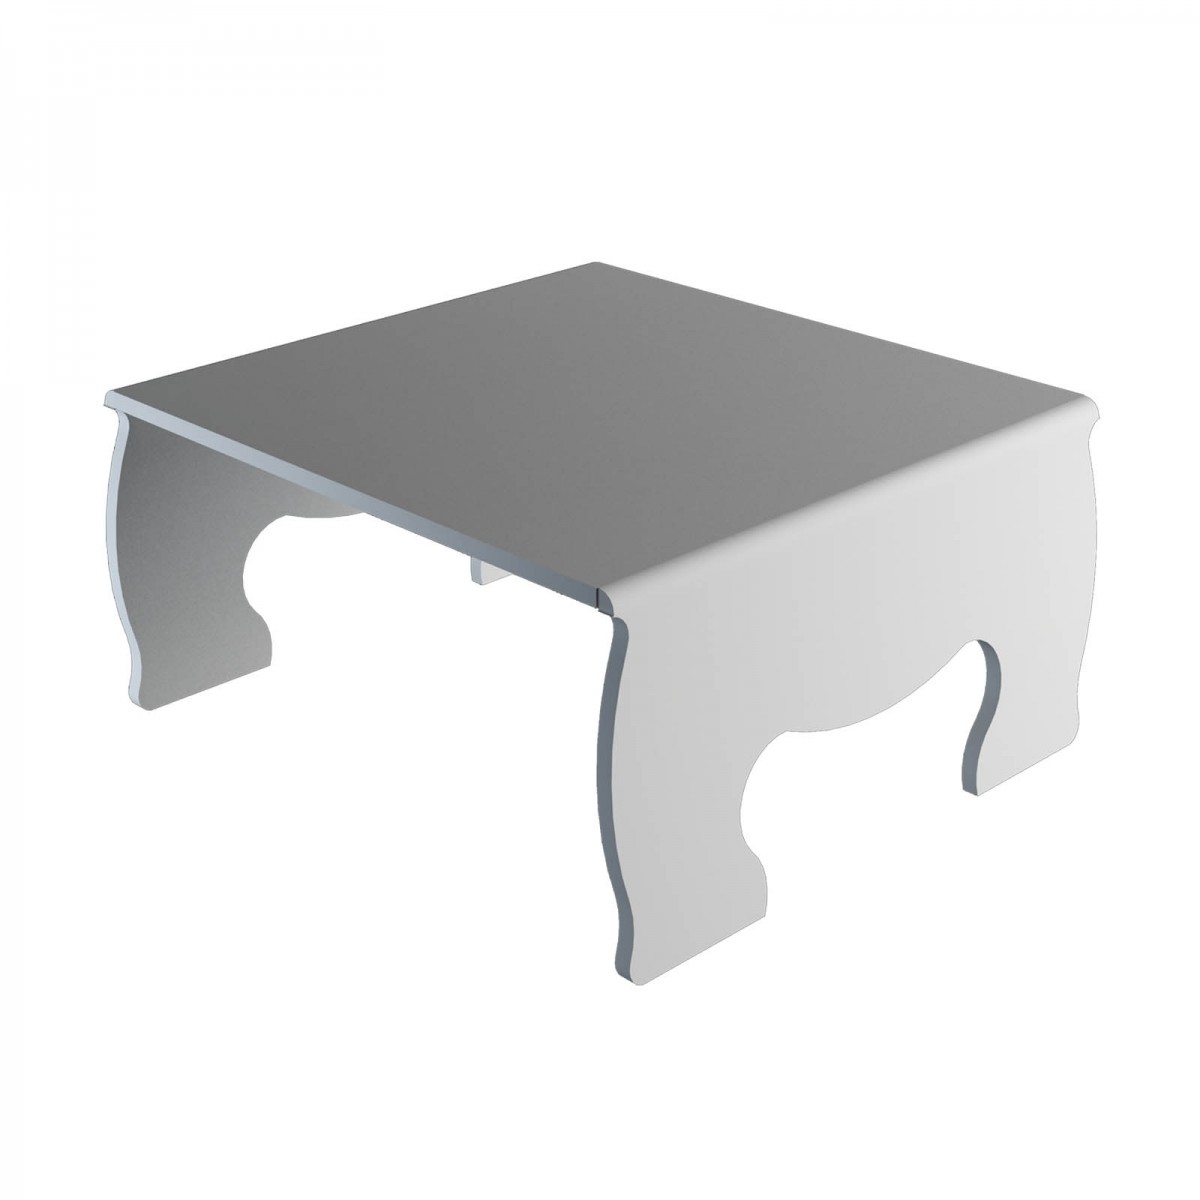 E-620 - Alzatina/Tavolino multiuso in plexiglass bianco - Spessore 5 mm